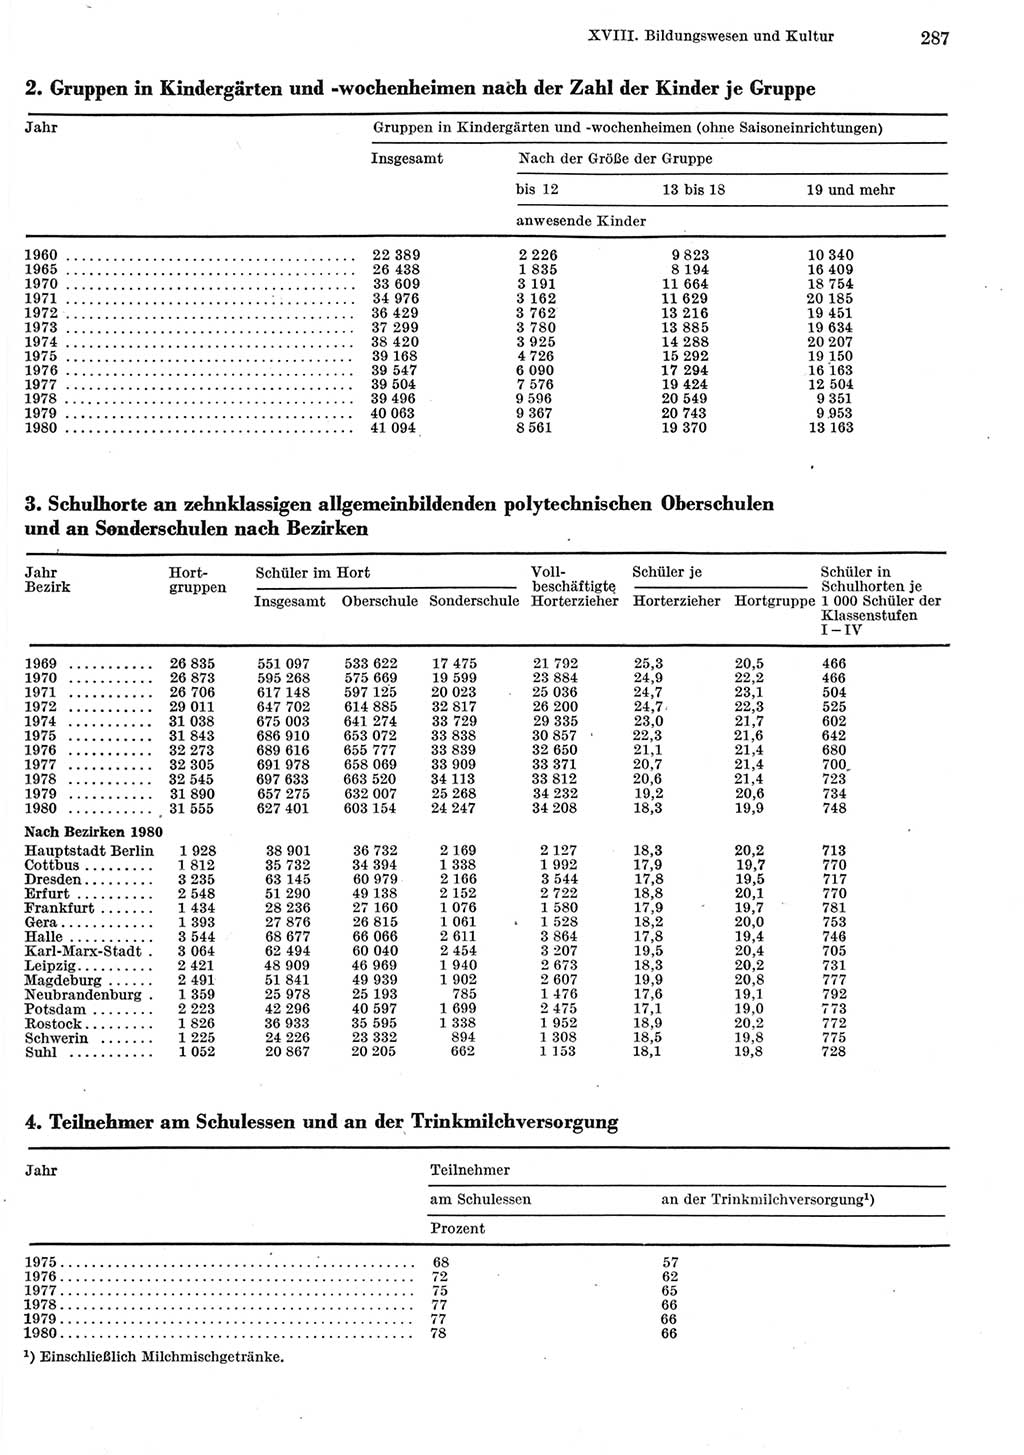 Statistisches Jahrbuch der Deutschen Demokratischen Republik (DDR) 1981, Seite 287 (Stat. Jb. DDR 1981, S. 287)